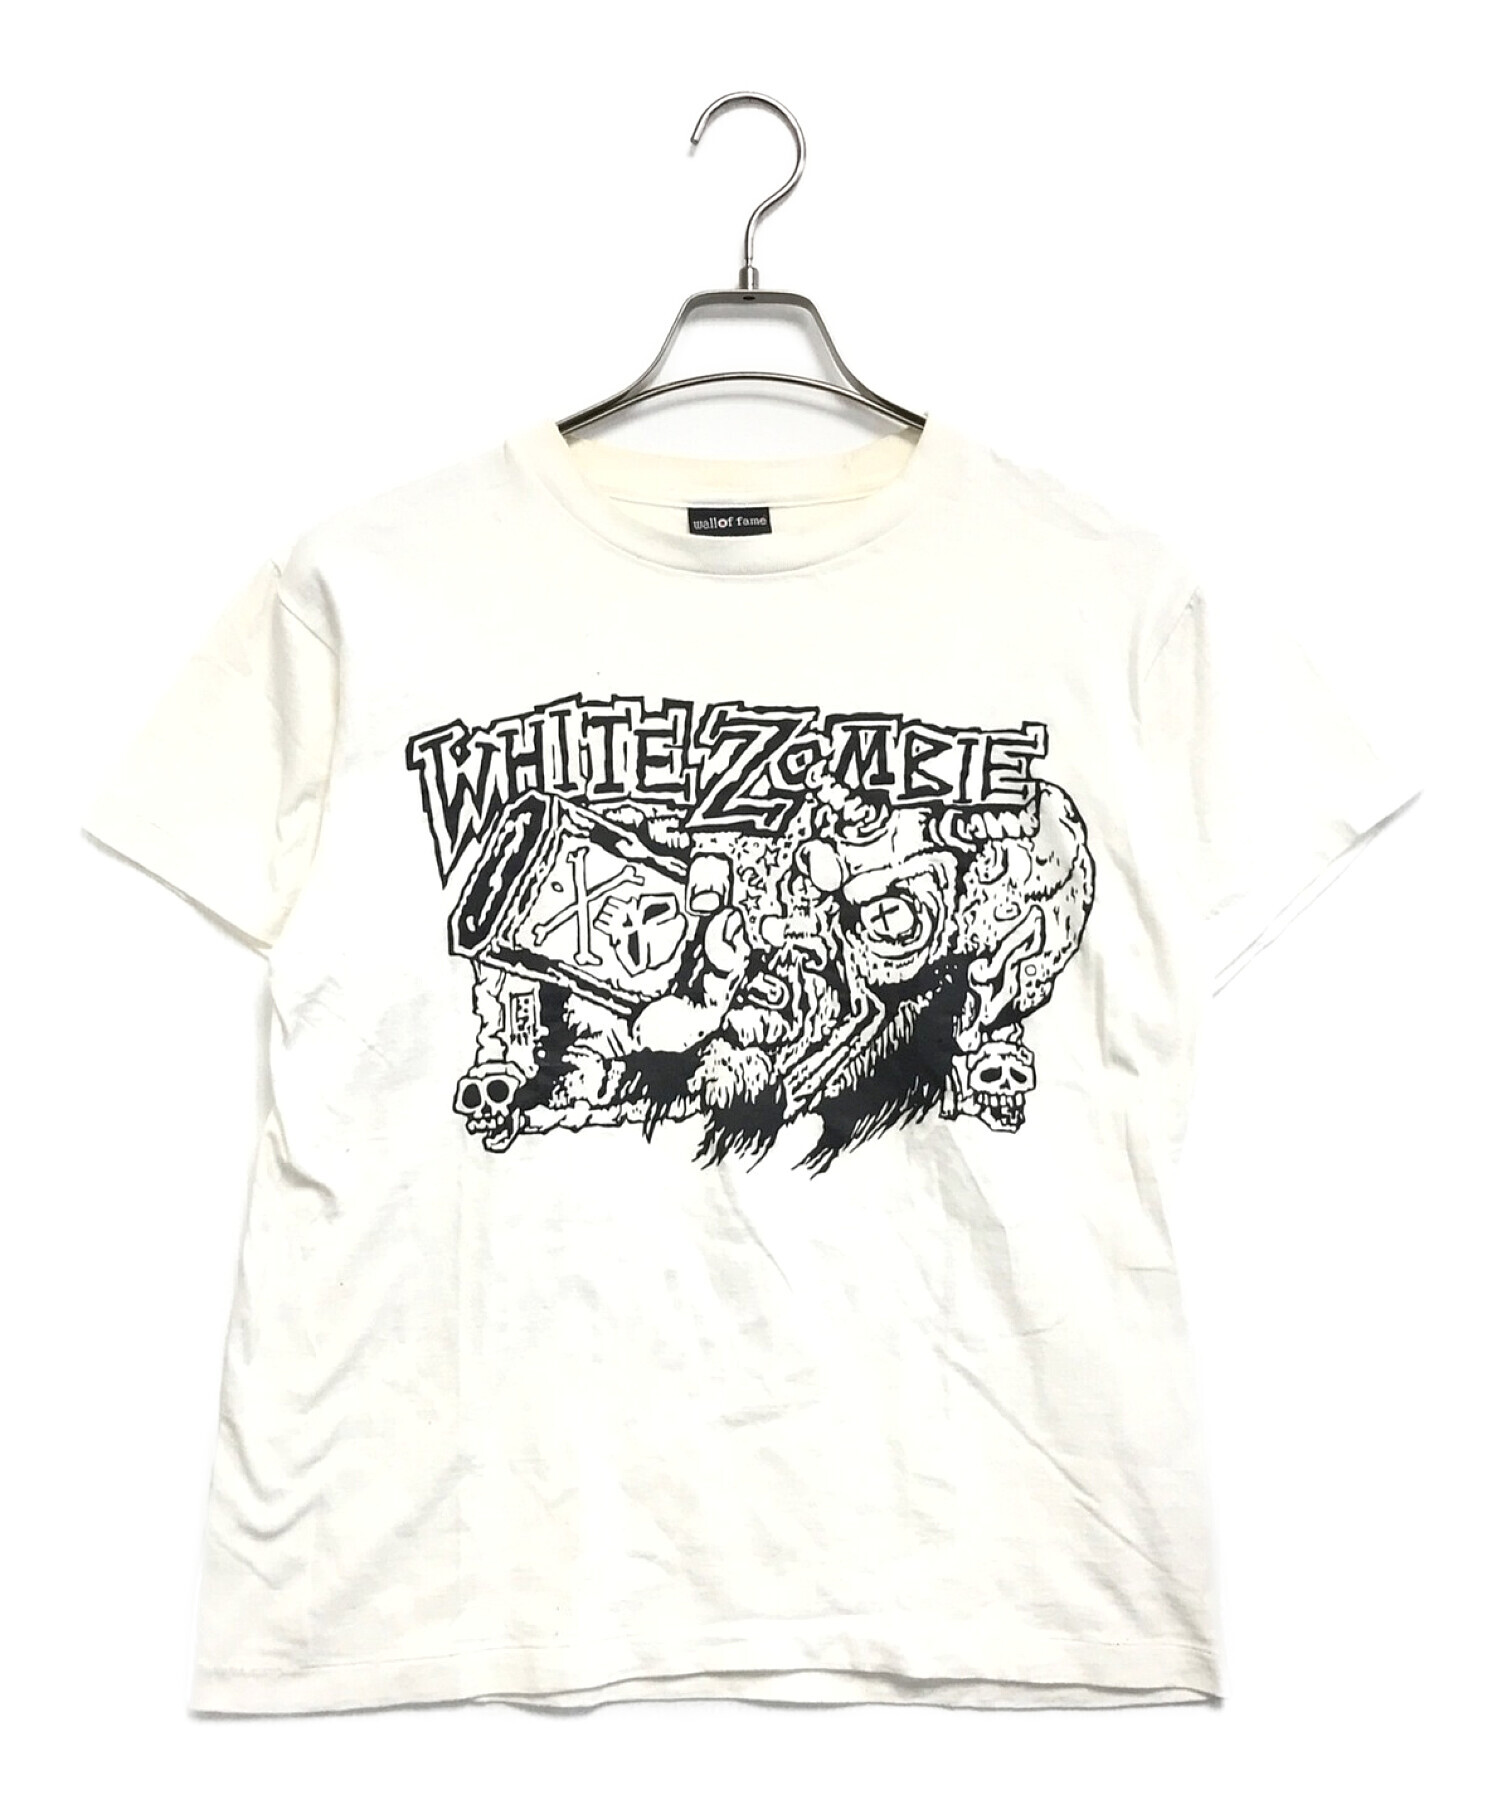 バンドTシャツ (バンドTシャツ) white zombie 両面プリントバンドTシャツ ホワイト サイズ:M